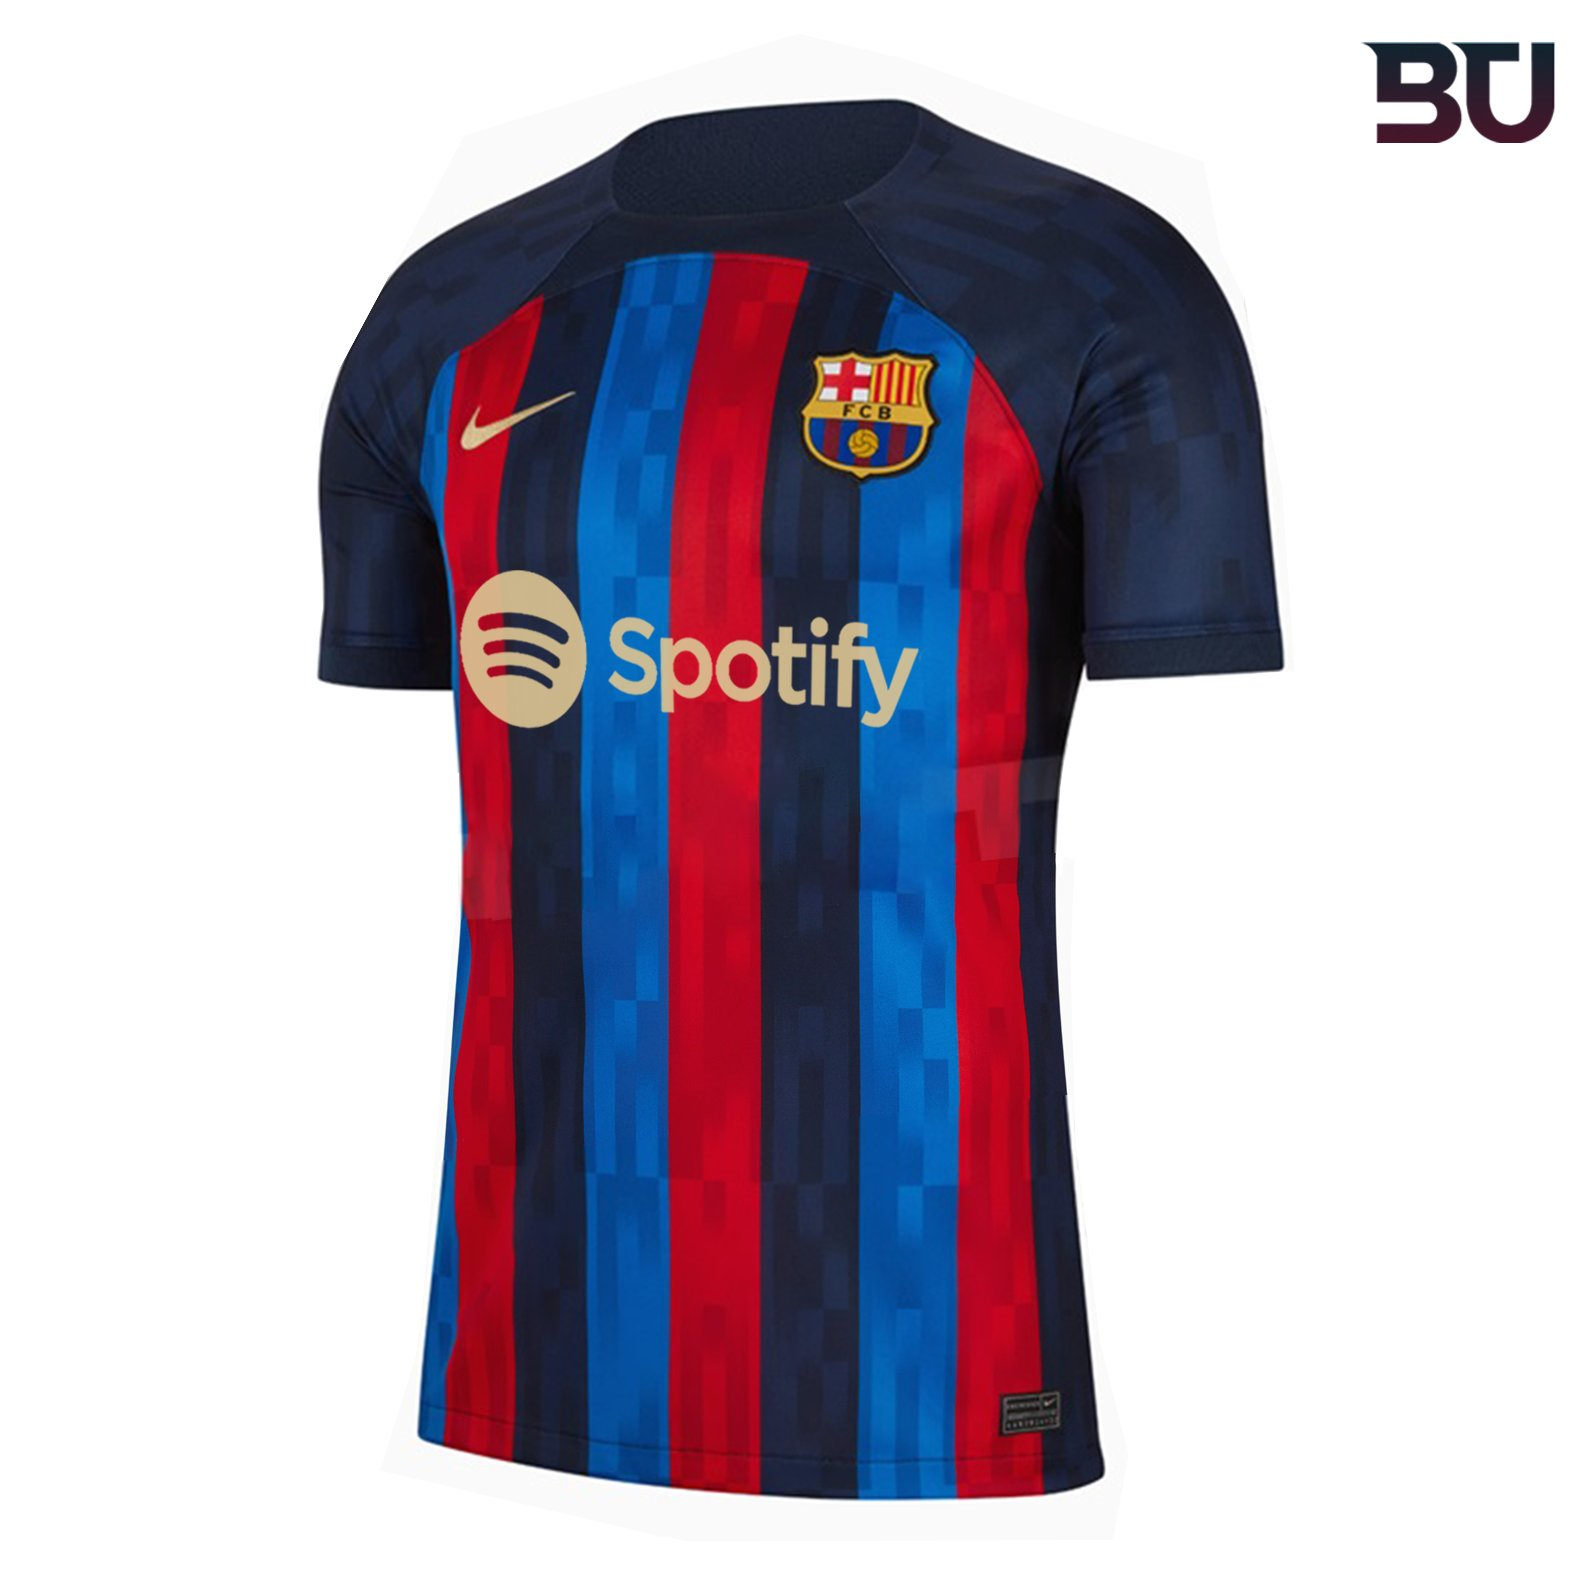 رونمایی از پیراهن جدید بارسلونا با معرفی اسپانسر جدید/عکس